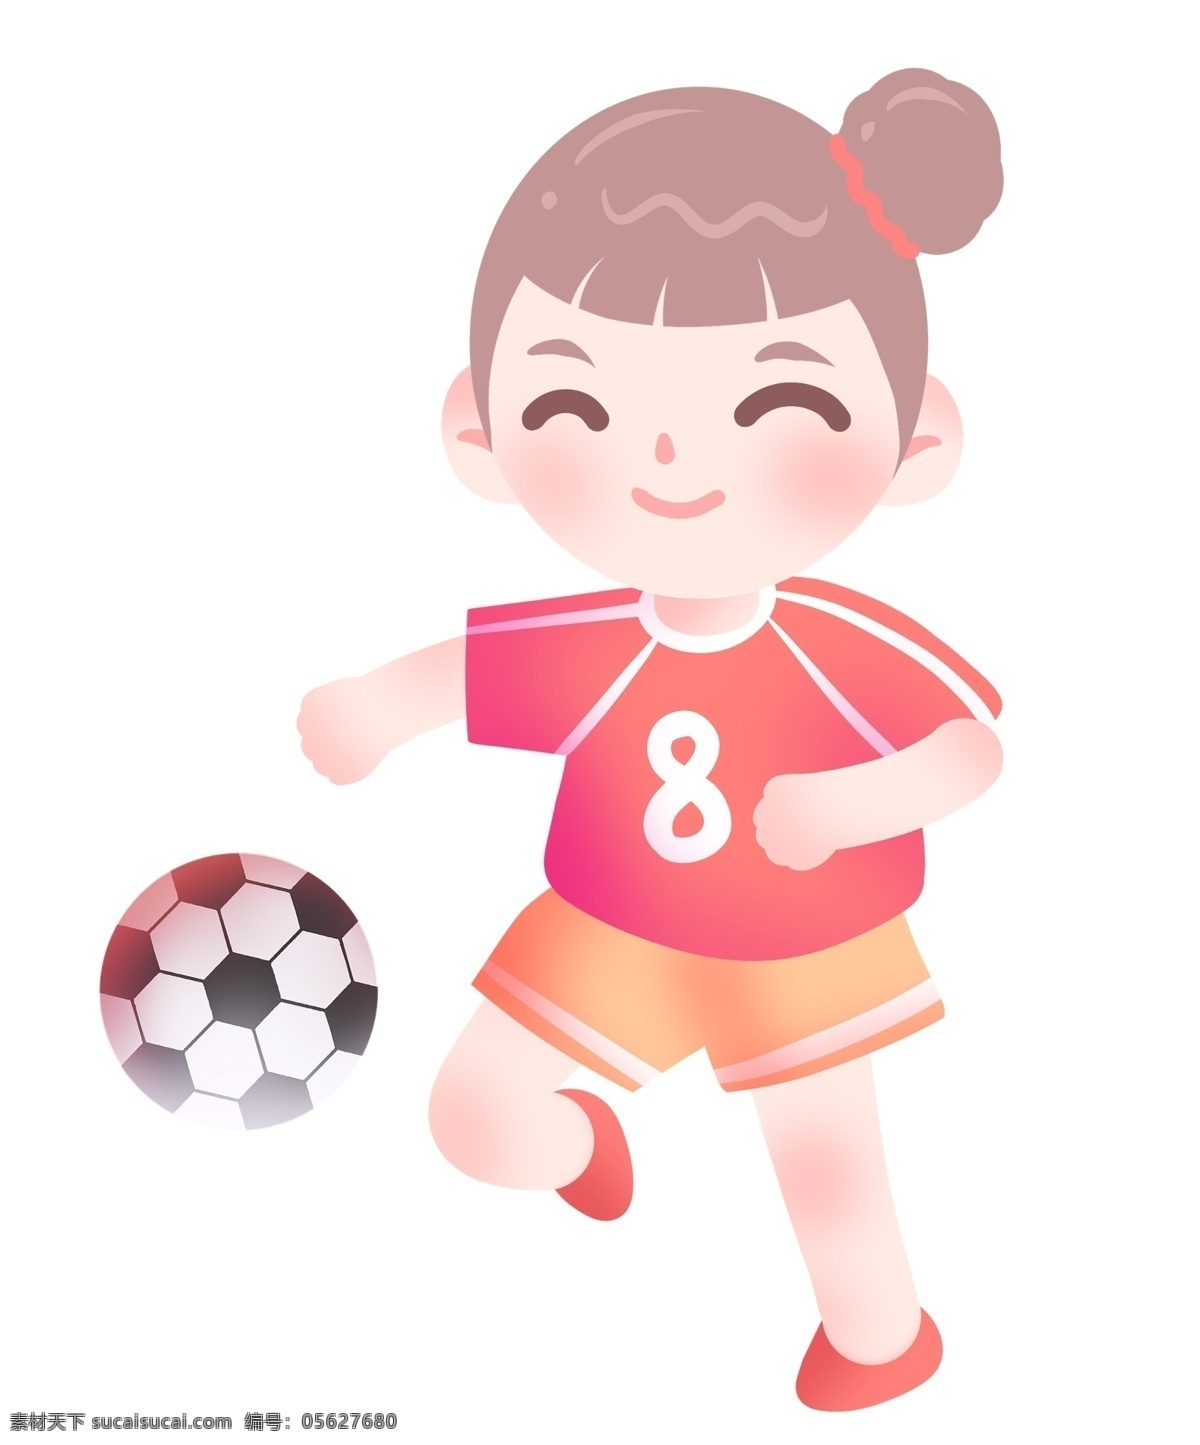 体育 足球 运动 女孩 8号球员 玩耍女孩插画 体育足球运动 足球运动员 踢球女孩插画 足球运动